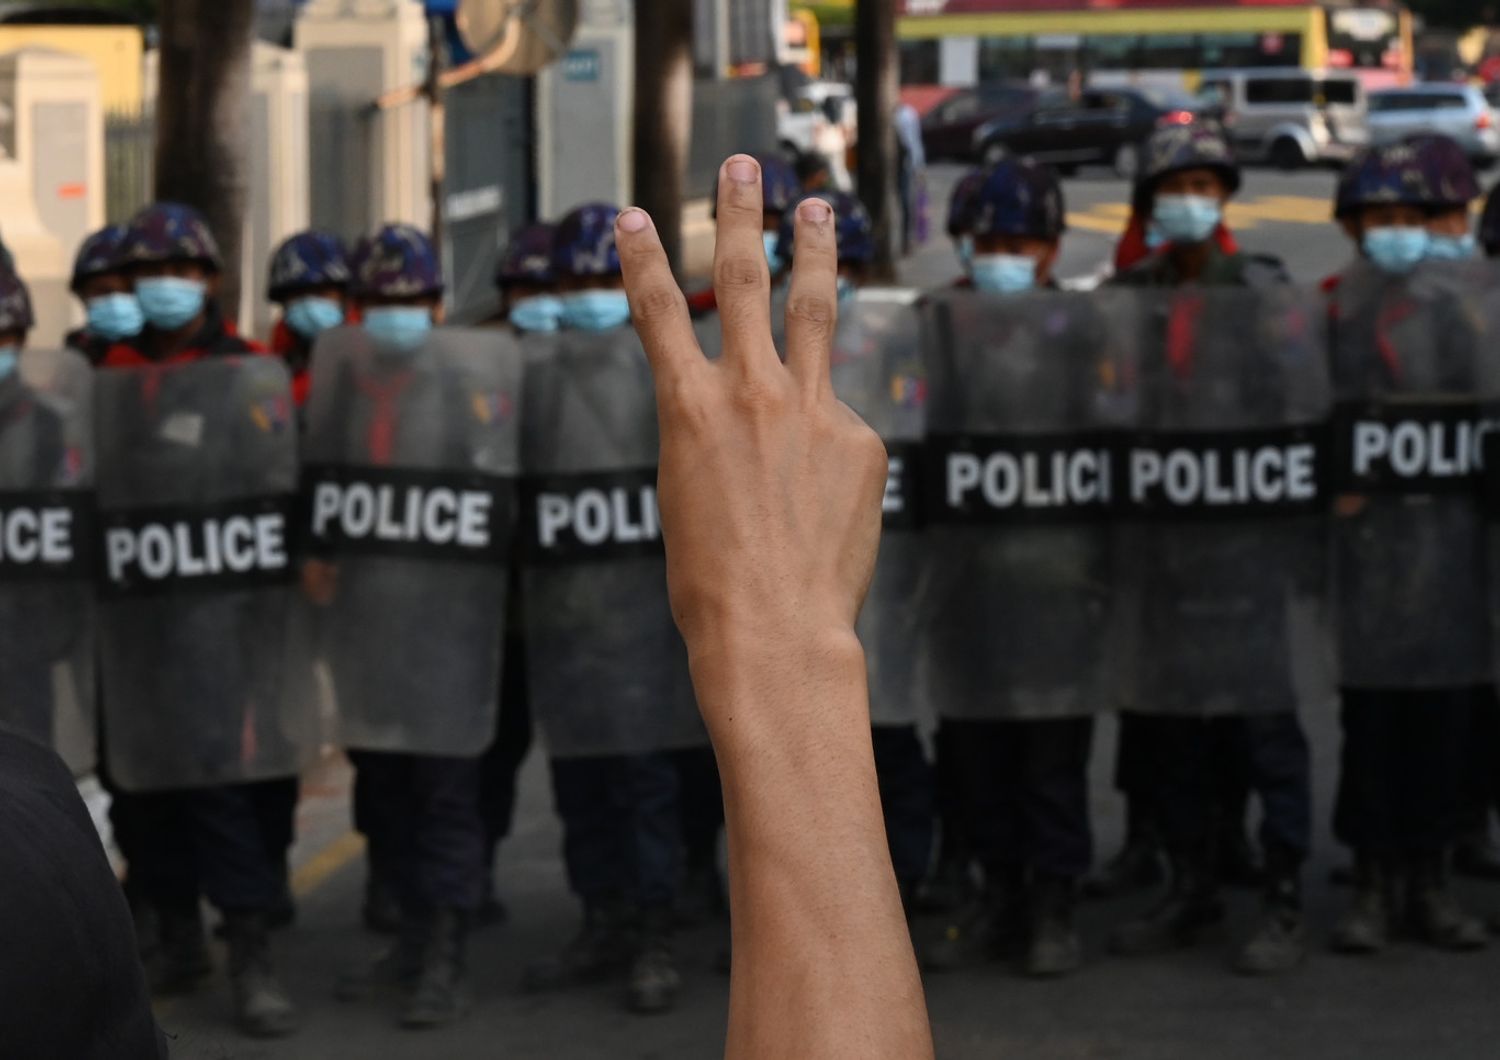 Un momento della protesta contro il golpe della giunta militare in Myanmar